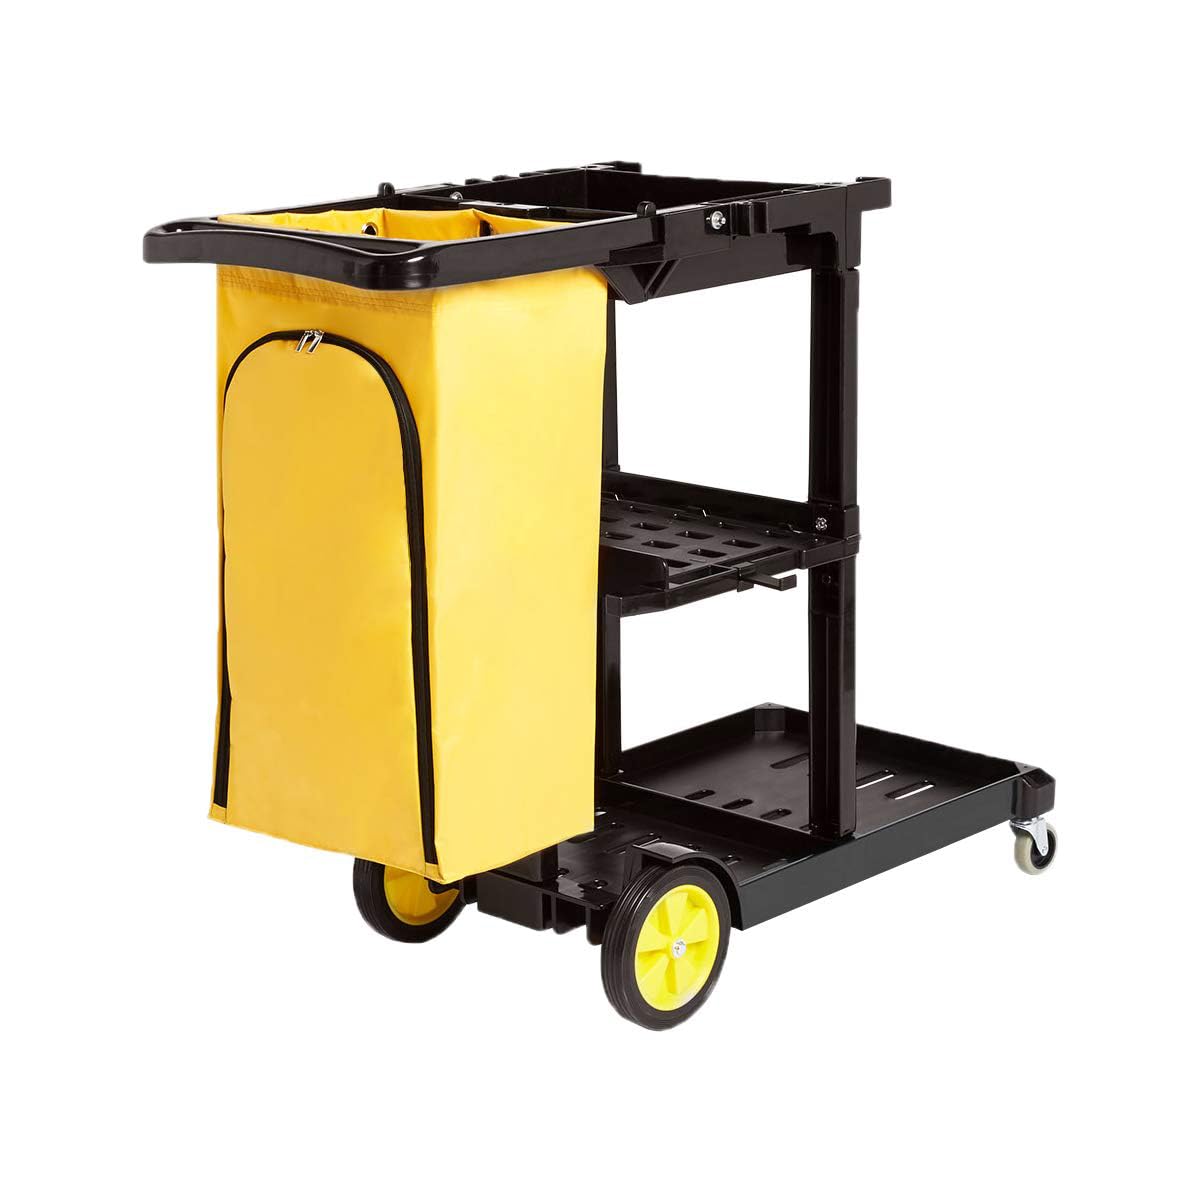 Amazon Basics Reinigungswagen mit Reißverschlusstasche und 2 Ablageflächen, Schwarz/Gelb, 120 x 51 x 98cm (Früher Marke AmazonCommercial)